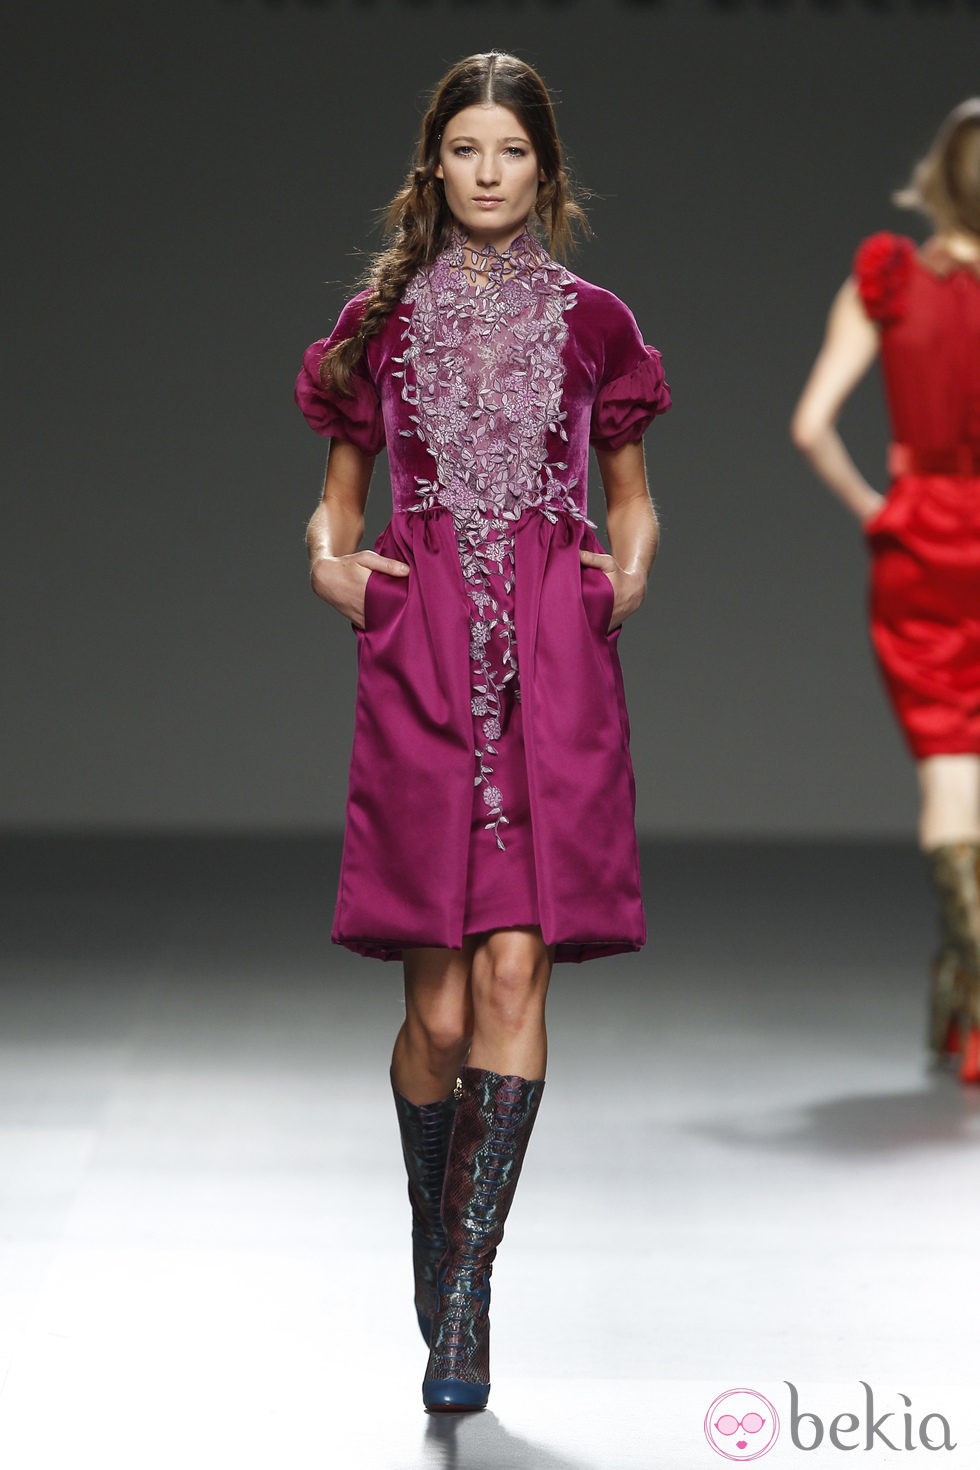 Vestido burdeos con detalles florales de la colección otoño/invierno 2012/2013 de Victorio & Lucchino